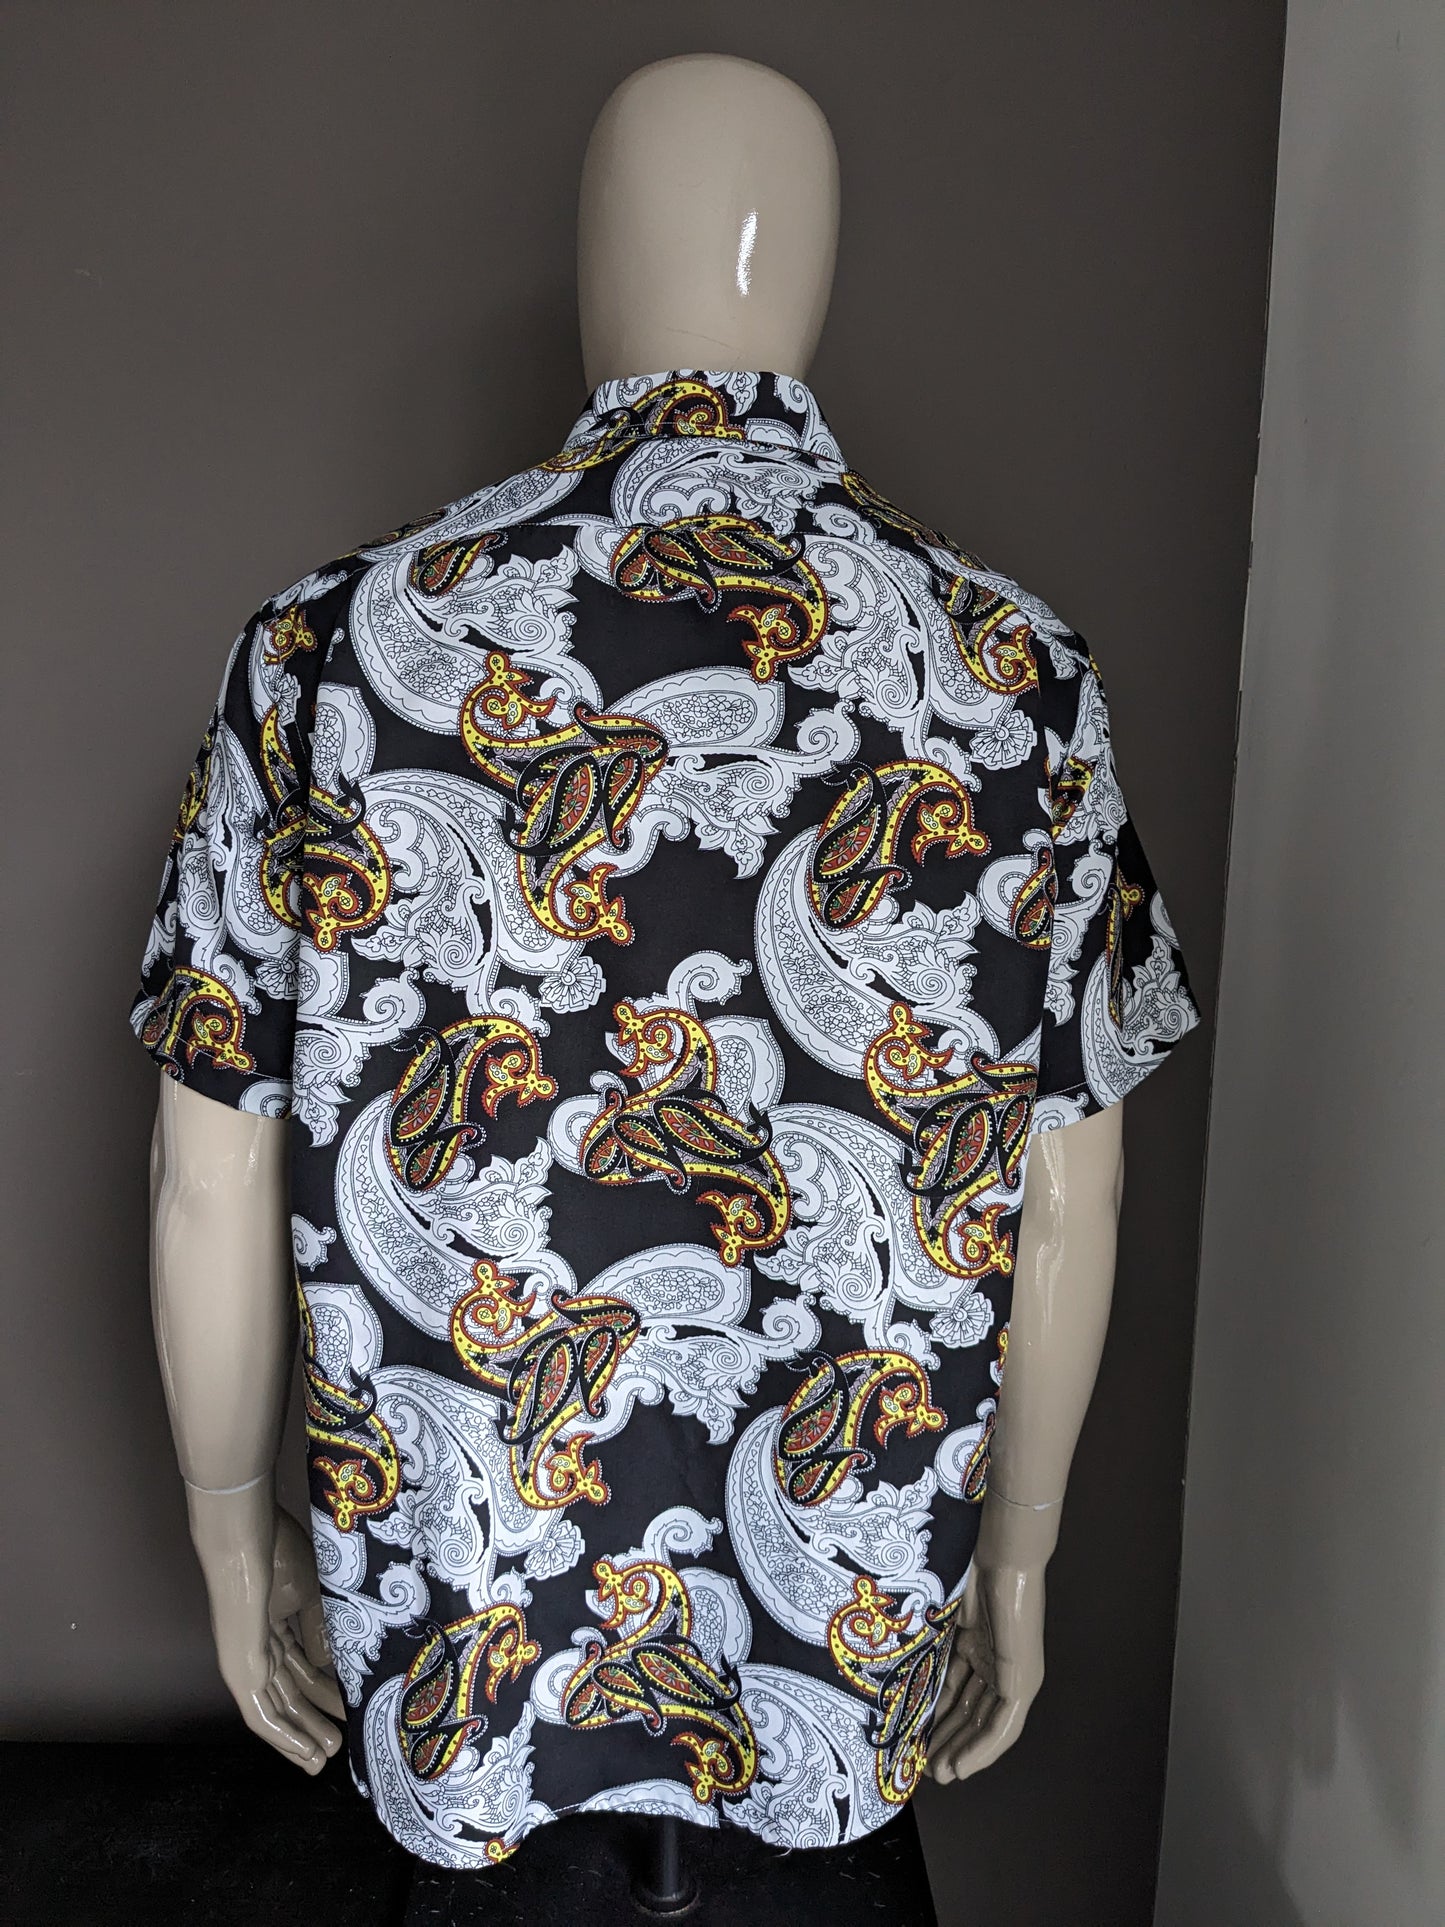 Camisa de Amparo con manga corta. Impresión de color marrón amarillo blanco negro. Tamaño xl.